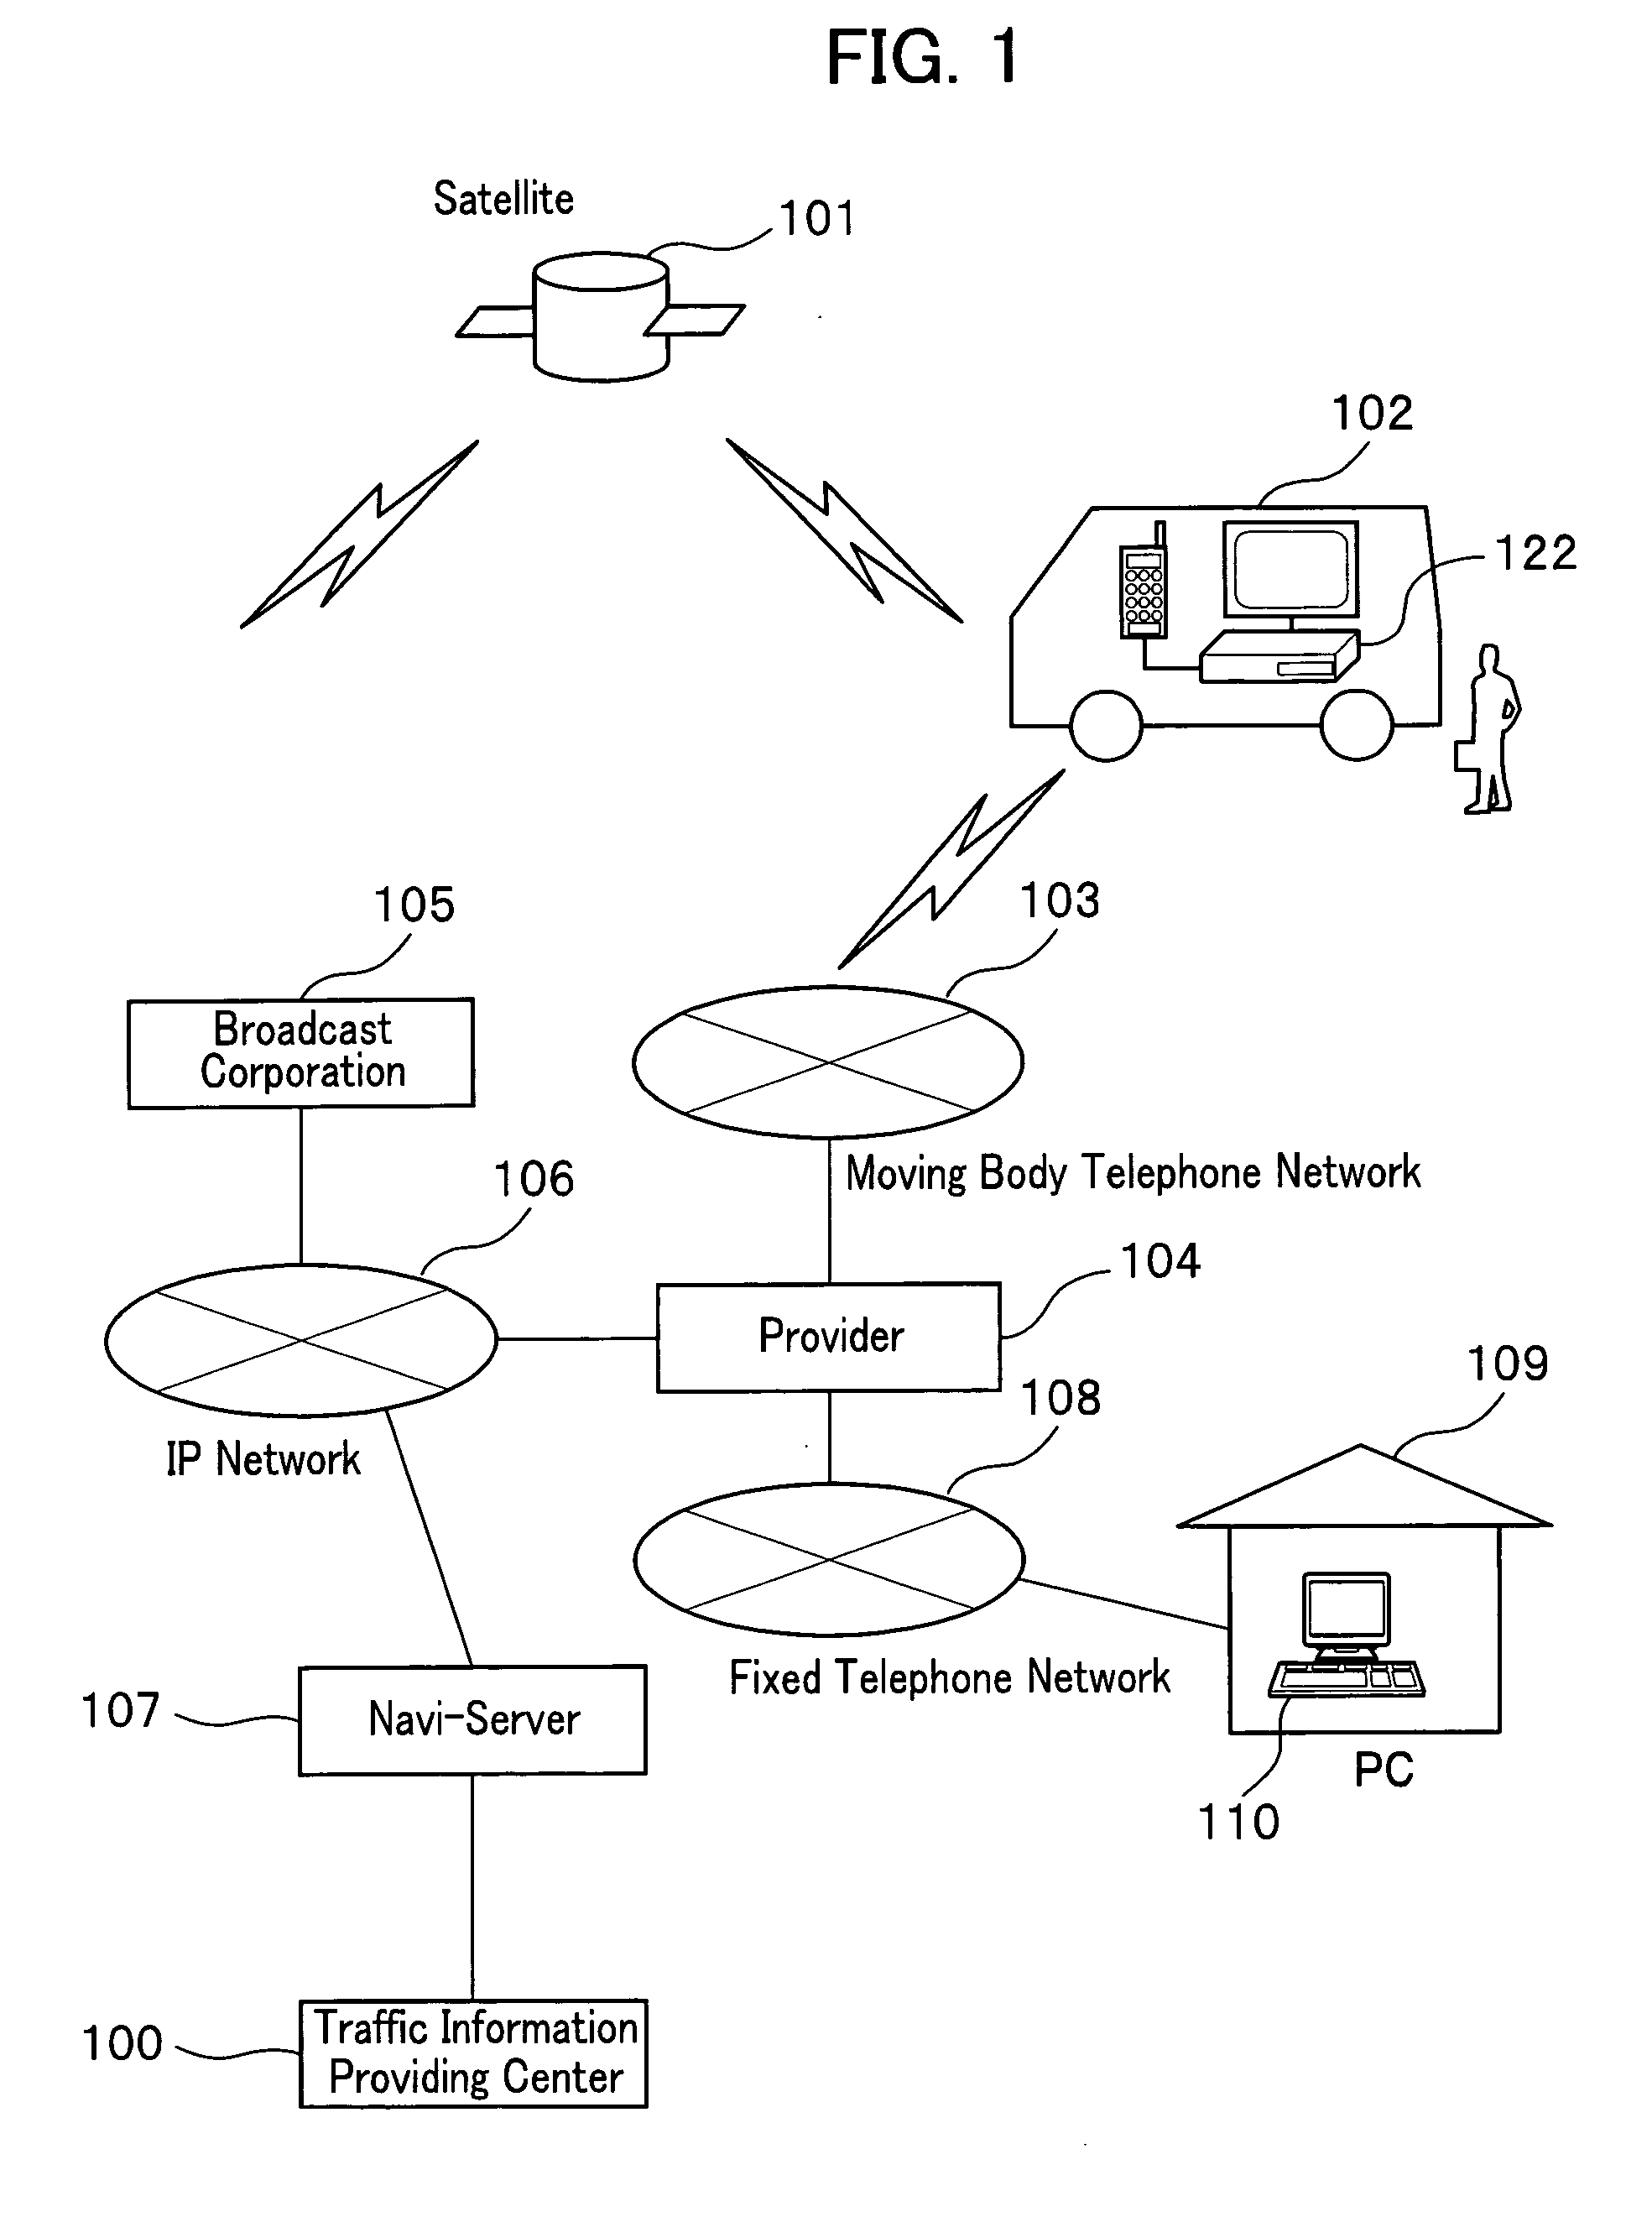 Display method of navi-server and navigation